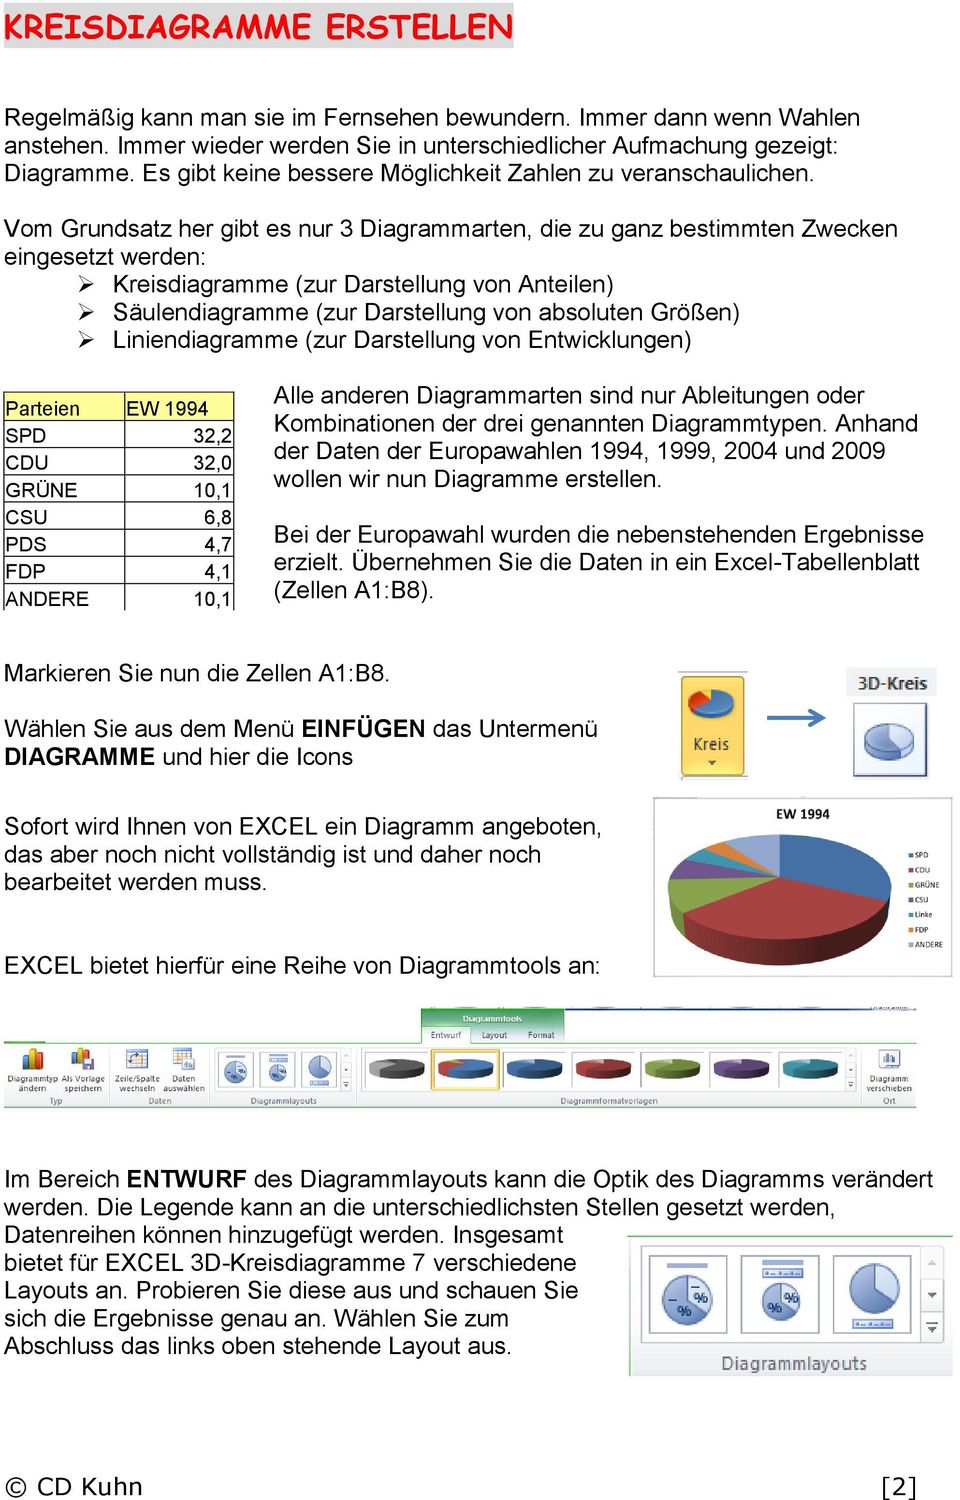 Diagramme Erstellen Mit Excel Pdf Kostenfreier Download